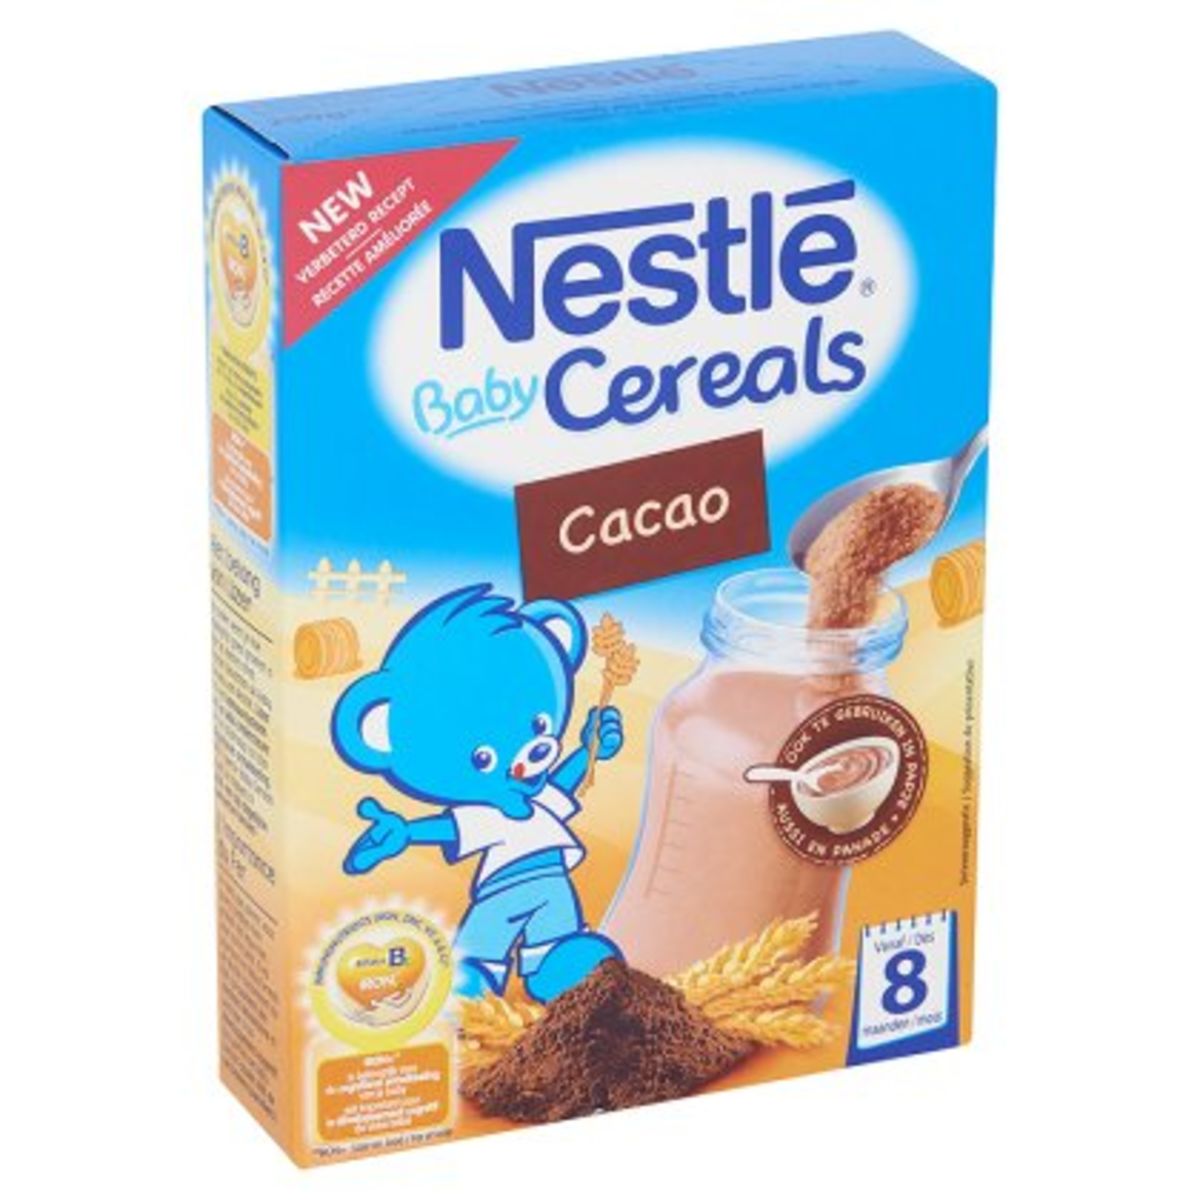 Nestlé Baby Cereals Cacao dès 6 mois 250g